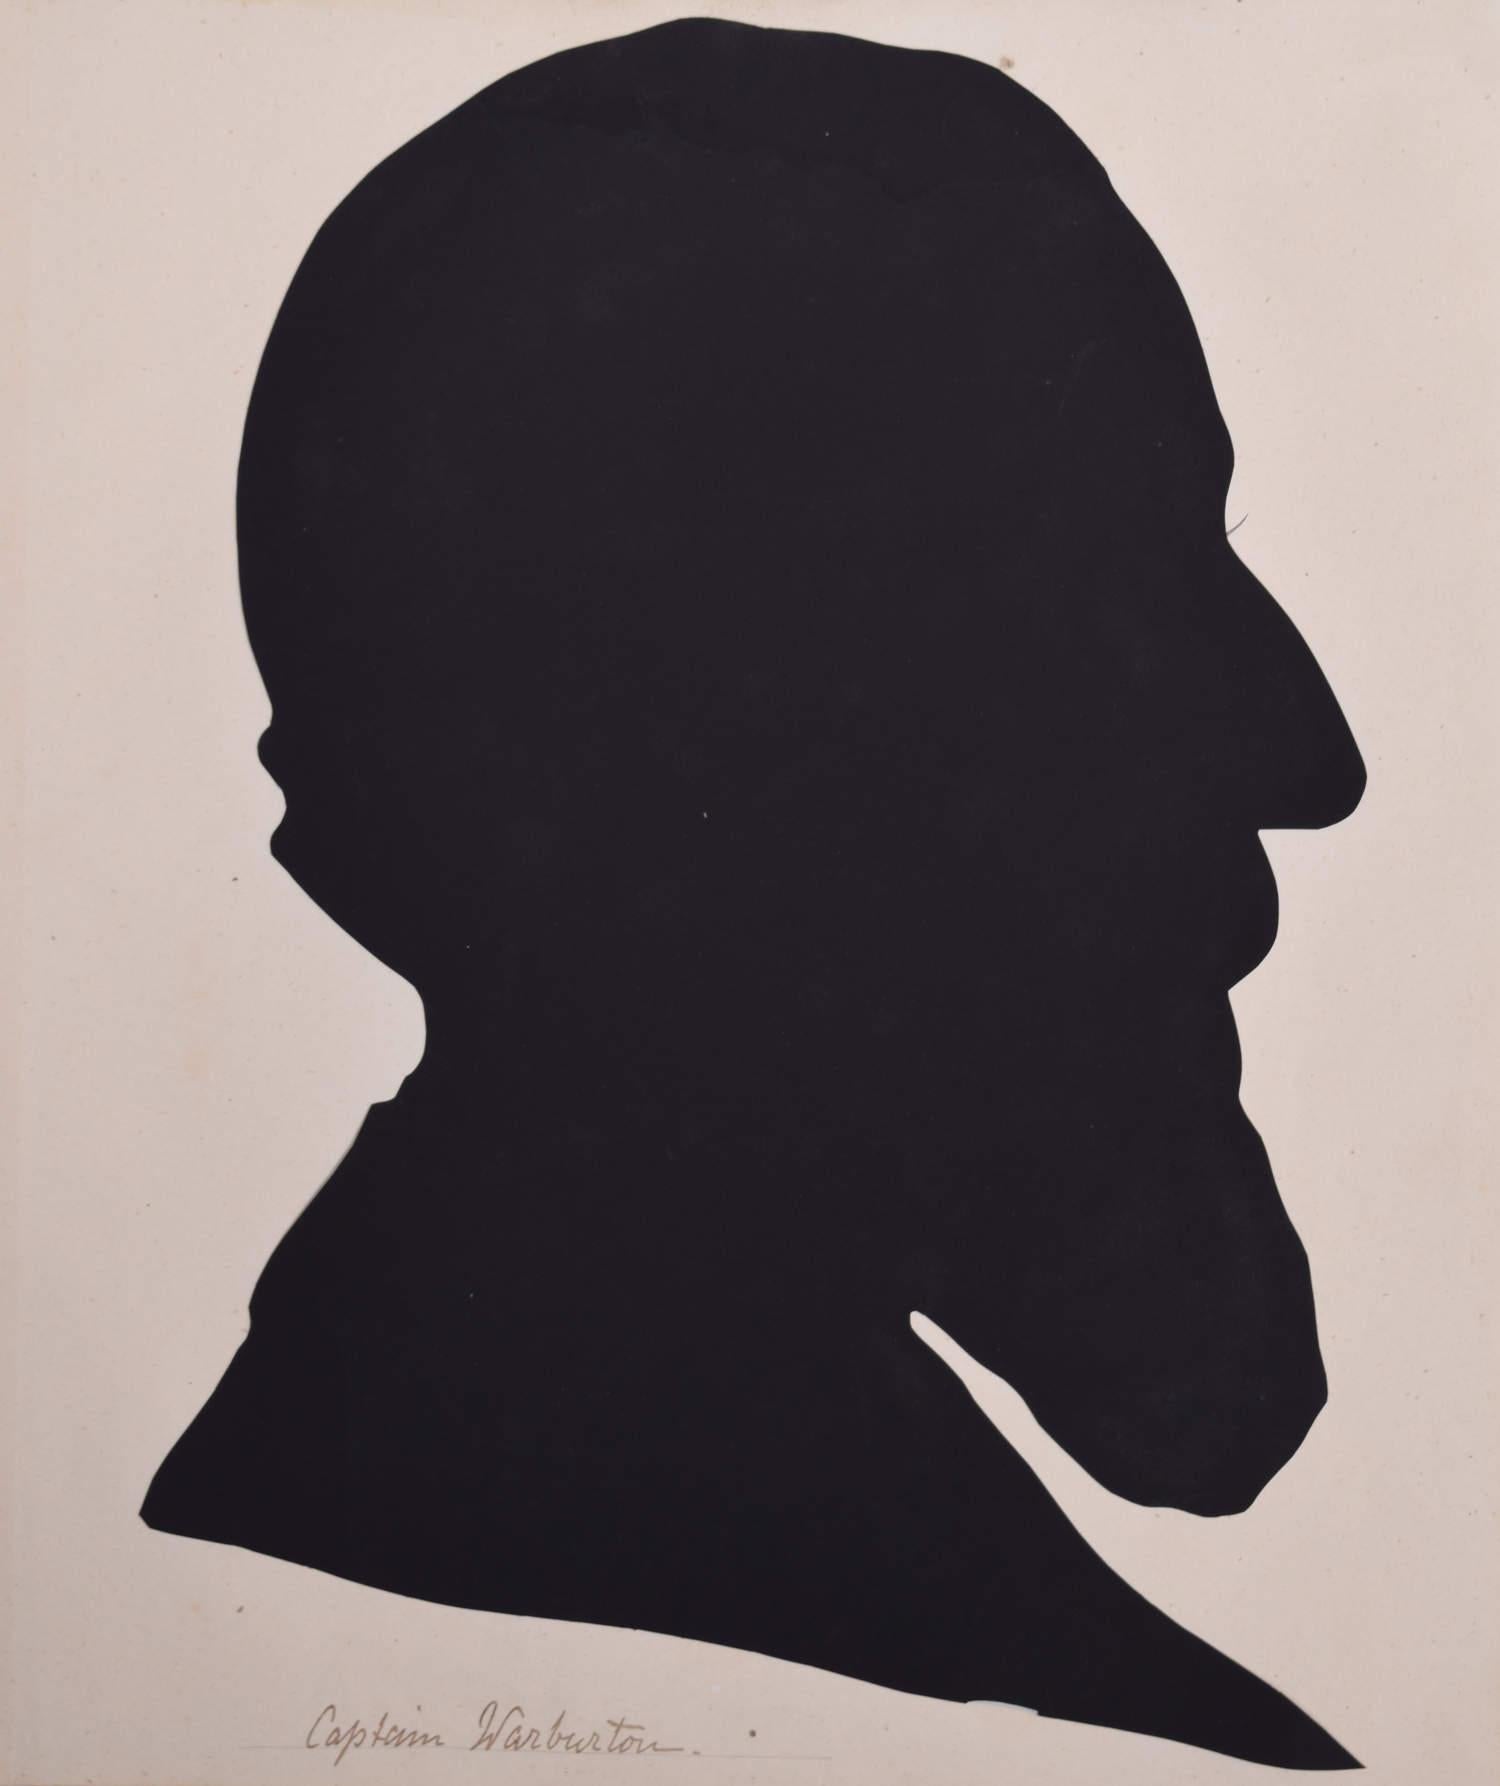 Unknown Black and White Photograph – Silhouette eines Herrn aus dem neunzehnten Jahrhundert: Kapitän Warburton